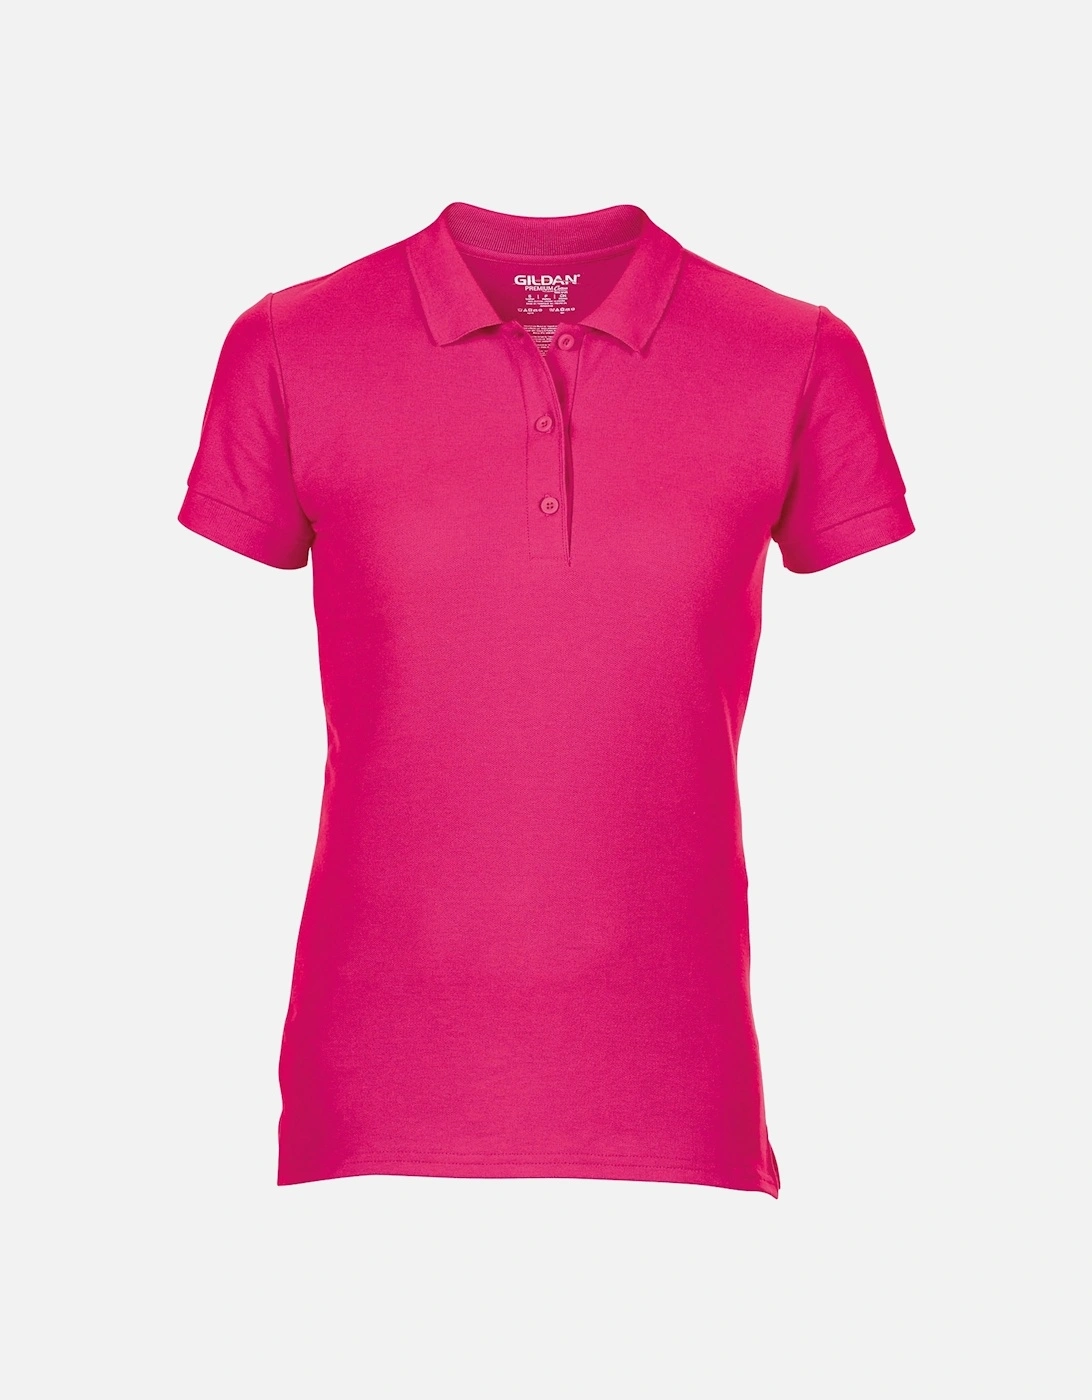 Womens/Ladies Premium Cotton Sport Double Pique Polo Shirt, 3 of 2